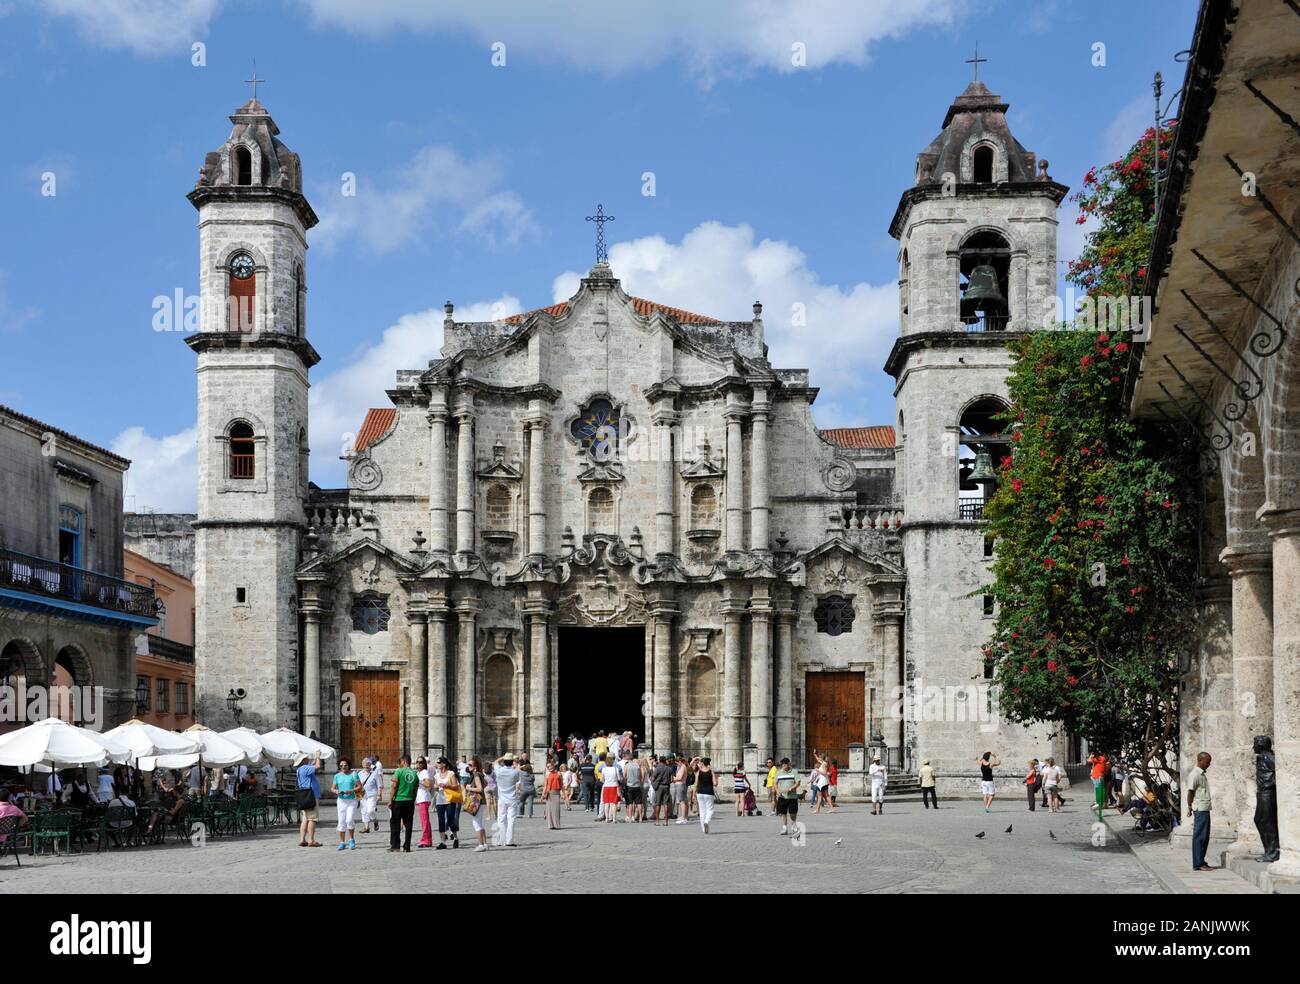 La Havane, Kathedrale San Cristobal. Kathedrale von der barocken la façade 1782. La Cathédrale San Cristobal, La Habana, Cuba |Kathedrale San Cristobal, Havan Banque D'Images